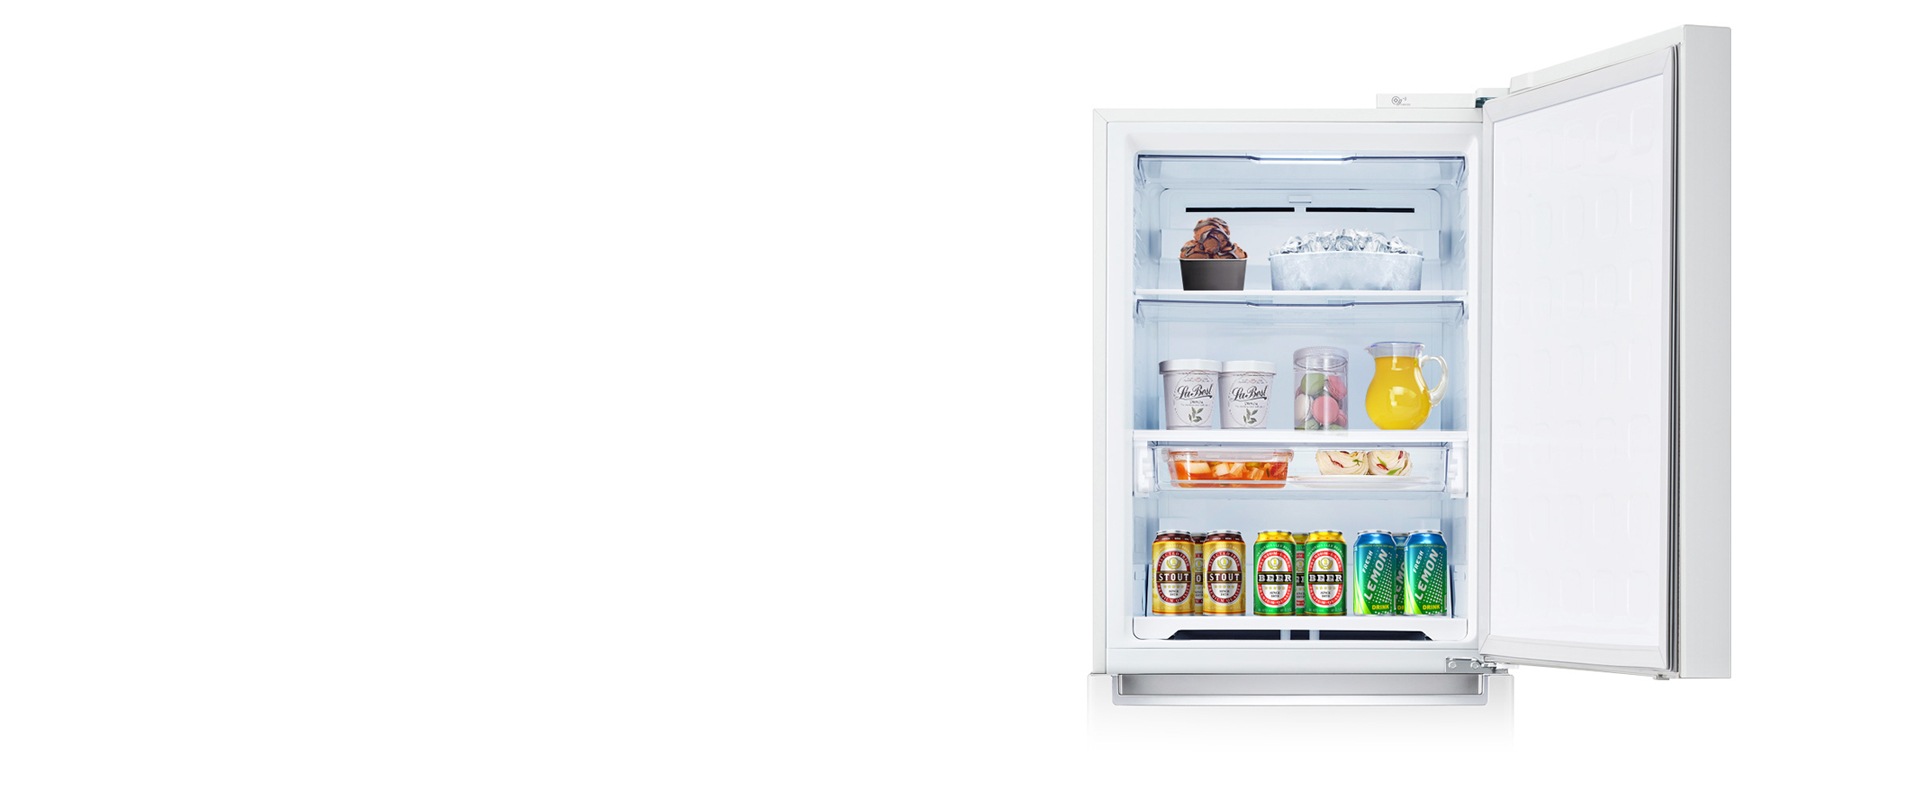 상칸을 냉동 또는 냉장으로1